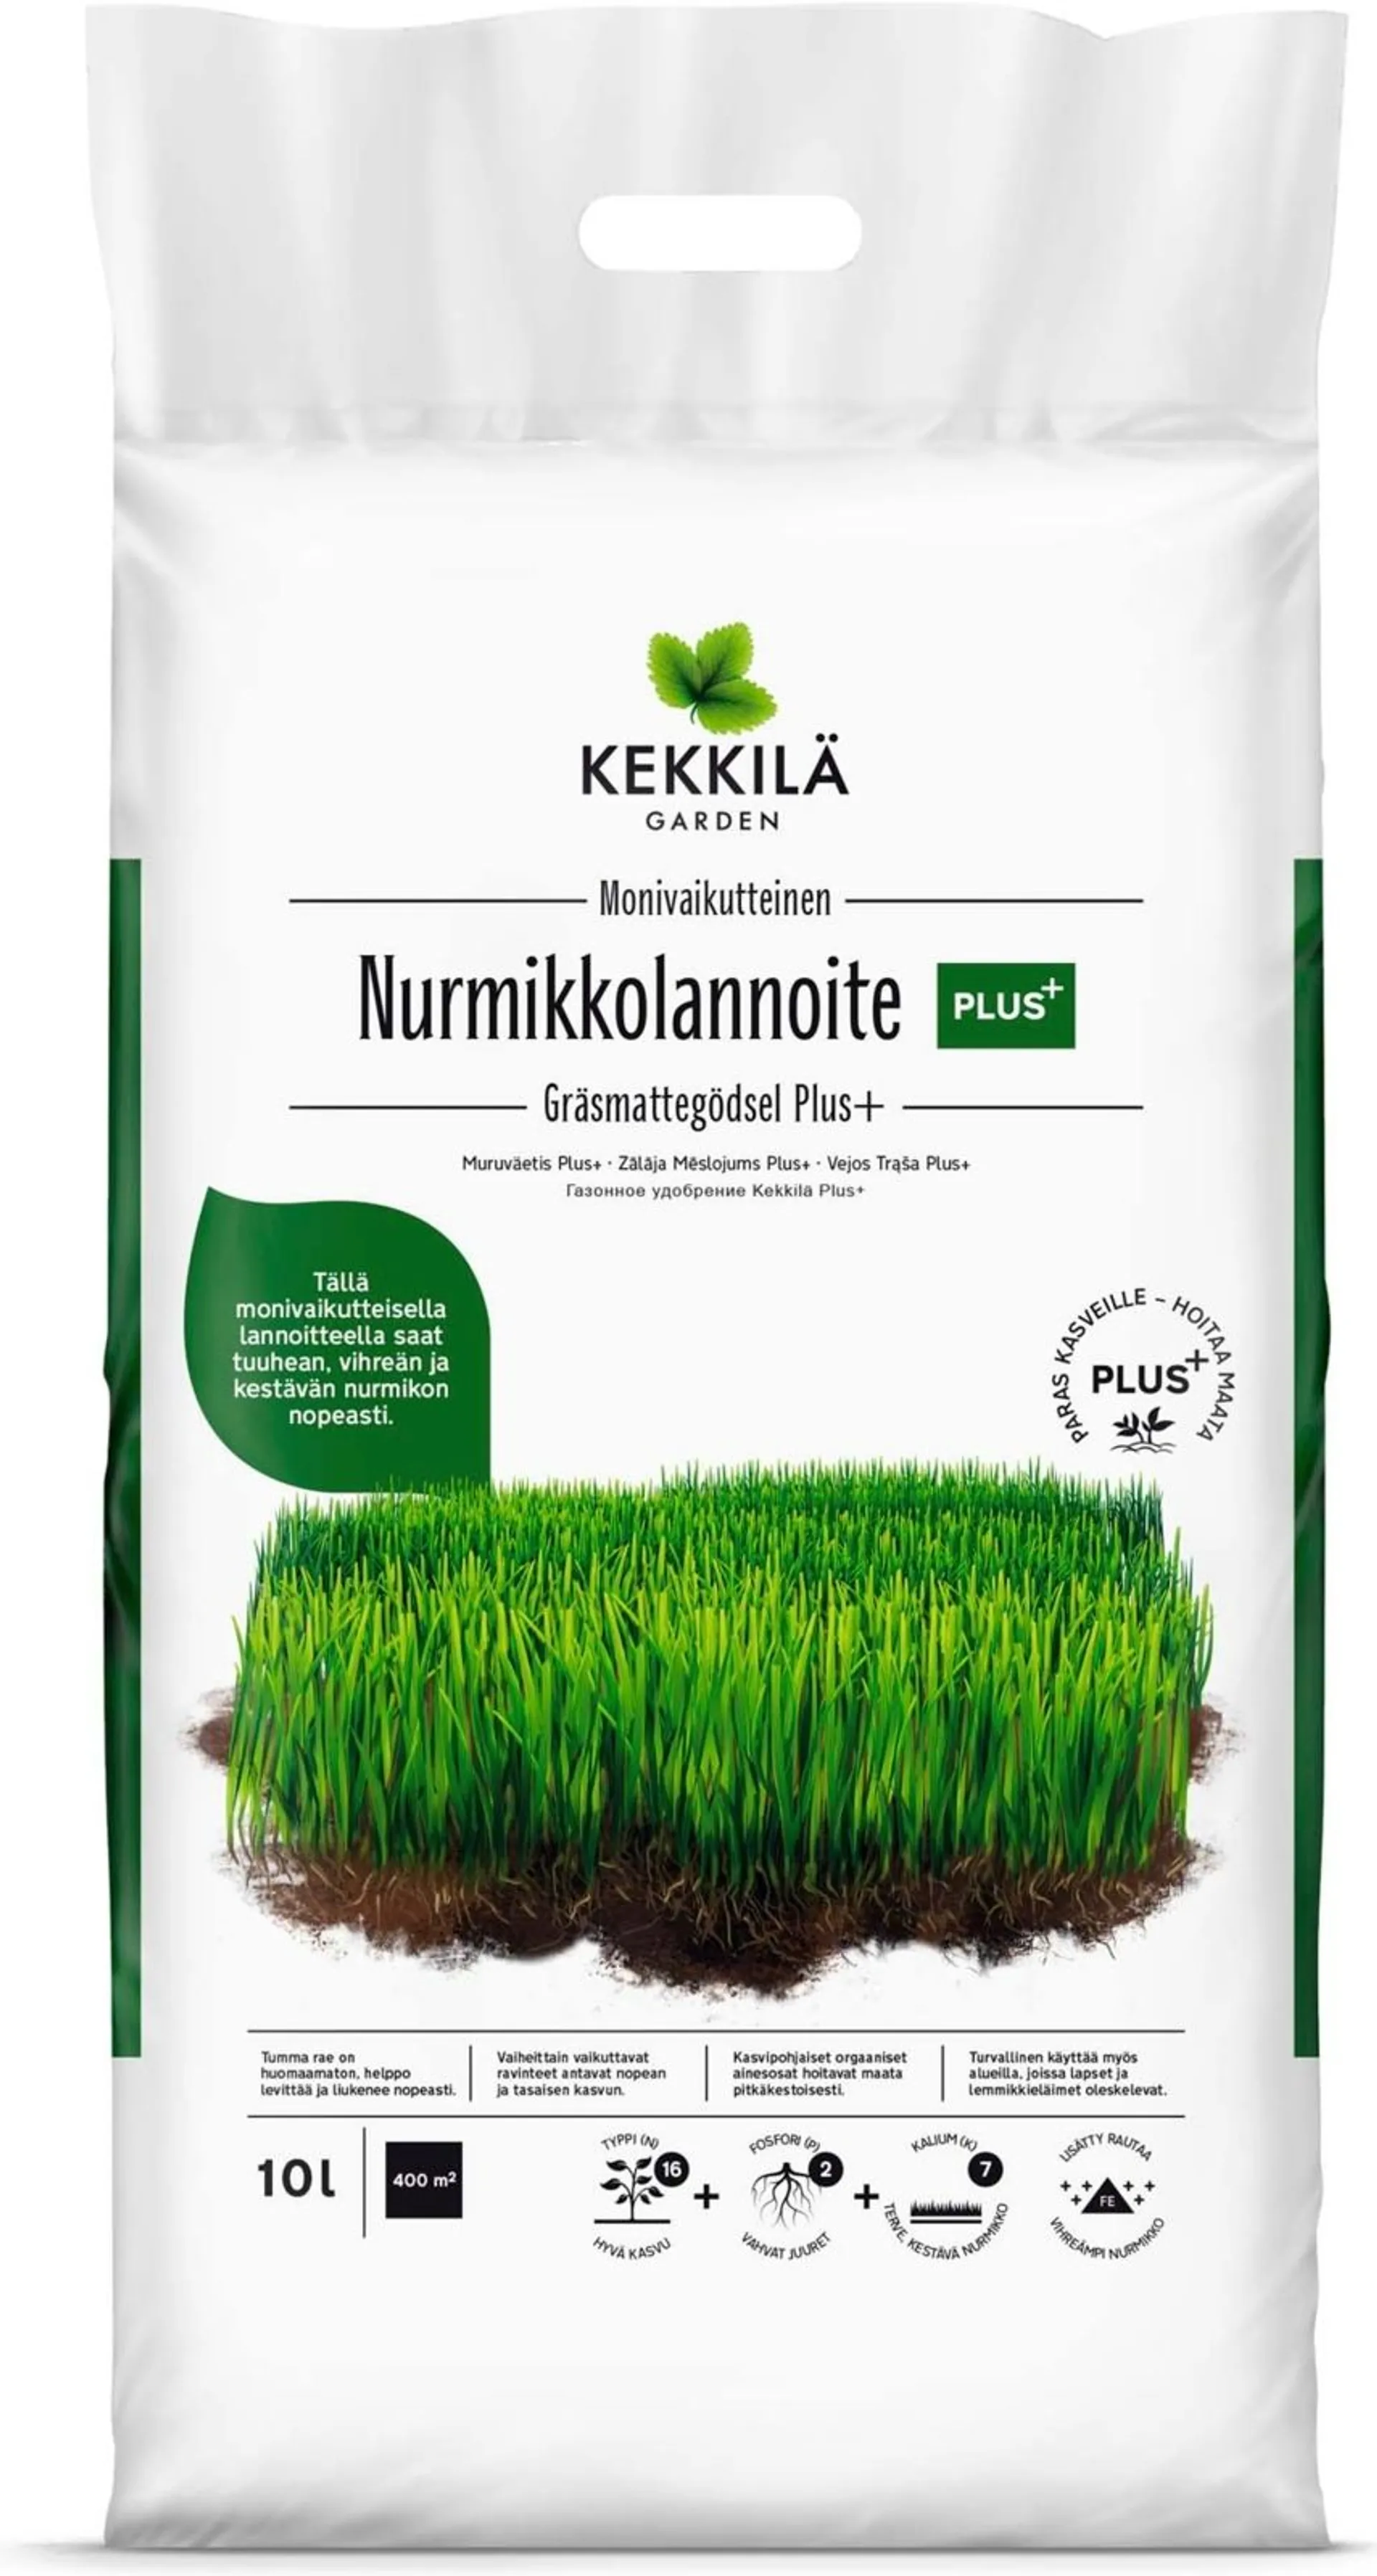 Kekkilä Nurmikkolannoite Plus+ 10 l